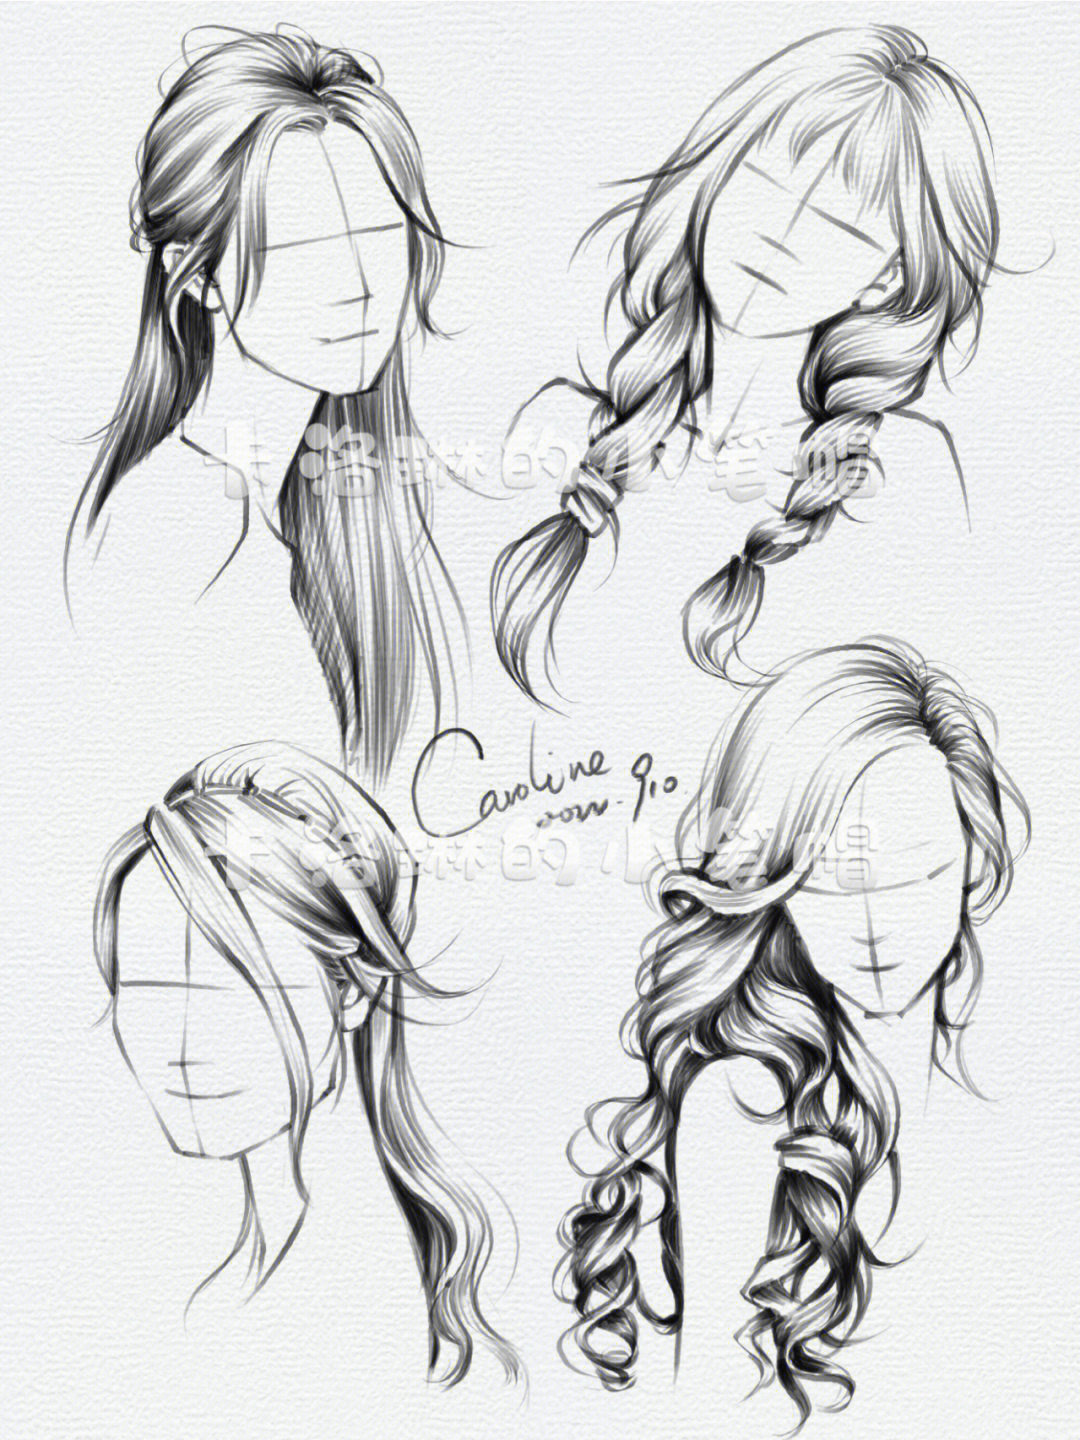 又来四款头发的随笔速写,每个发型都有临摹的原图贴在左上角